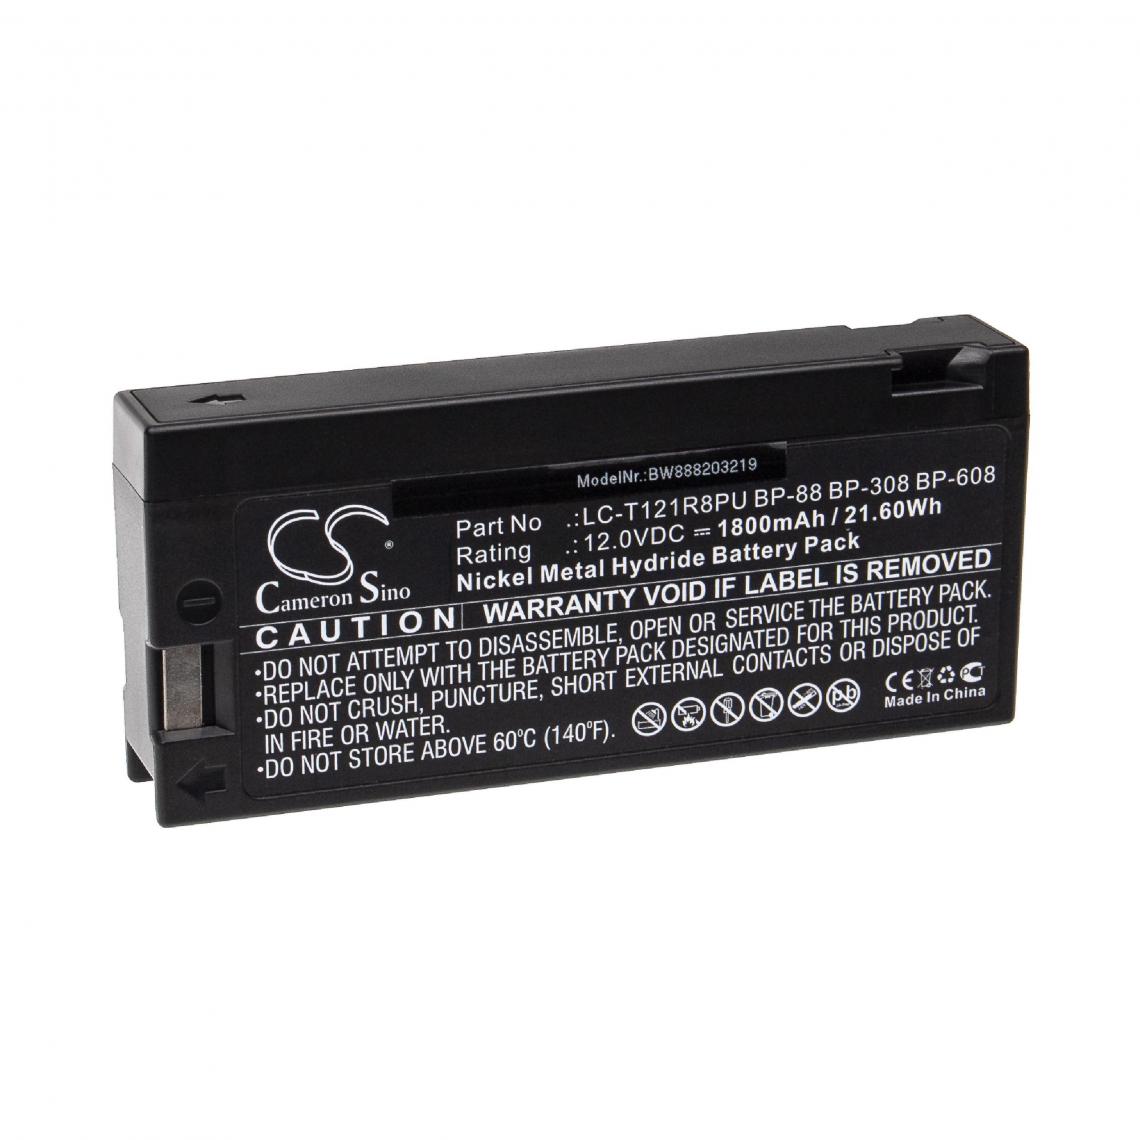 Vhbw - vhbw Batterie compatible avec JCPenney 686-6015, 686-6023, 686-6062, 686-6232, 855-3026, 855-8520 appareil médical (1800mAh, 12V, NiMH) - Piles spécifiques